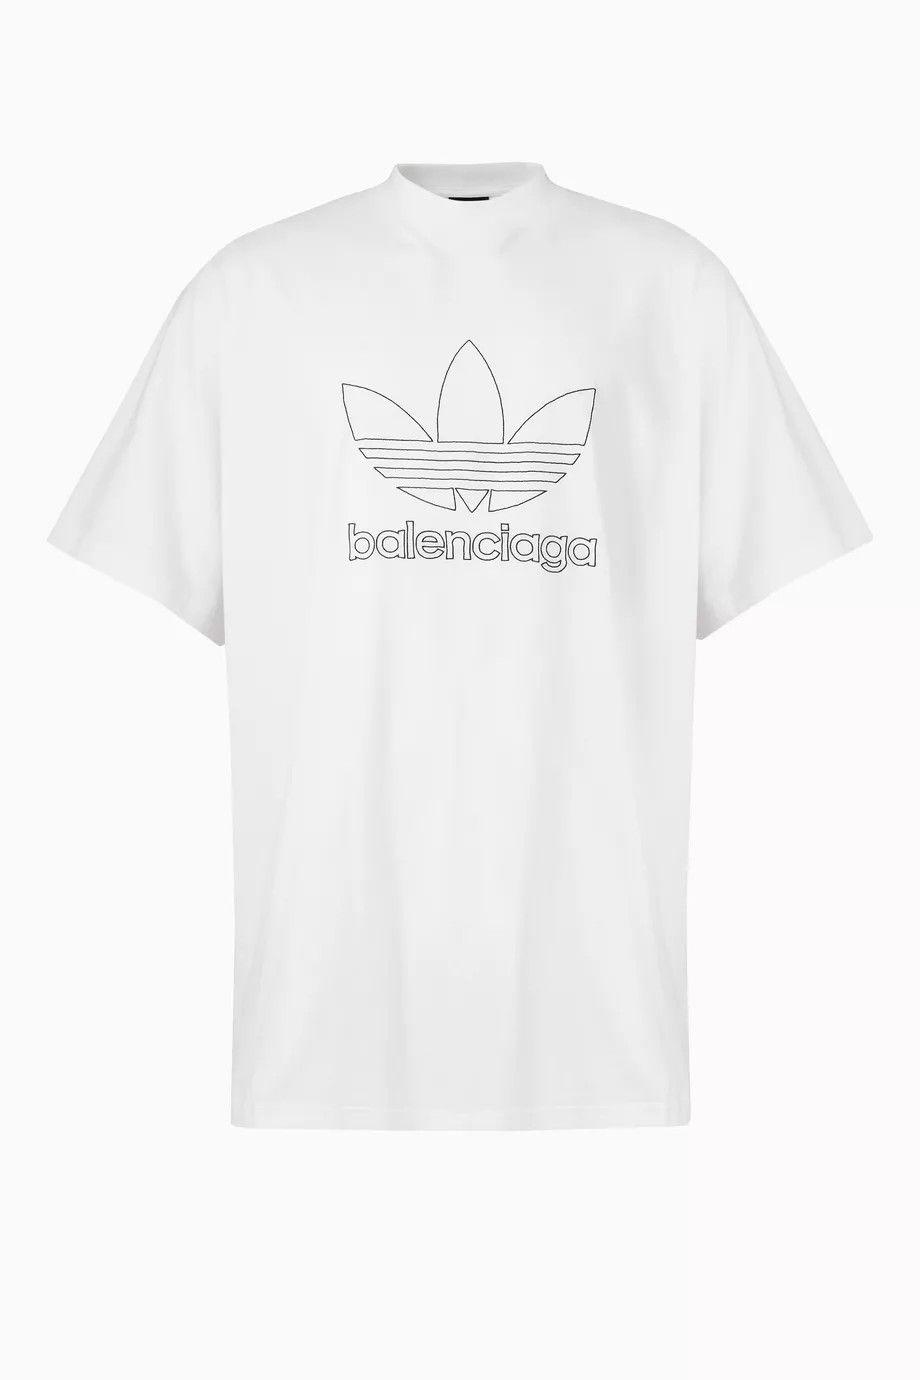 Balenciaga Balenciaga adidas t-shirt | Grailed